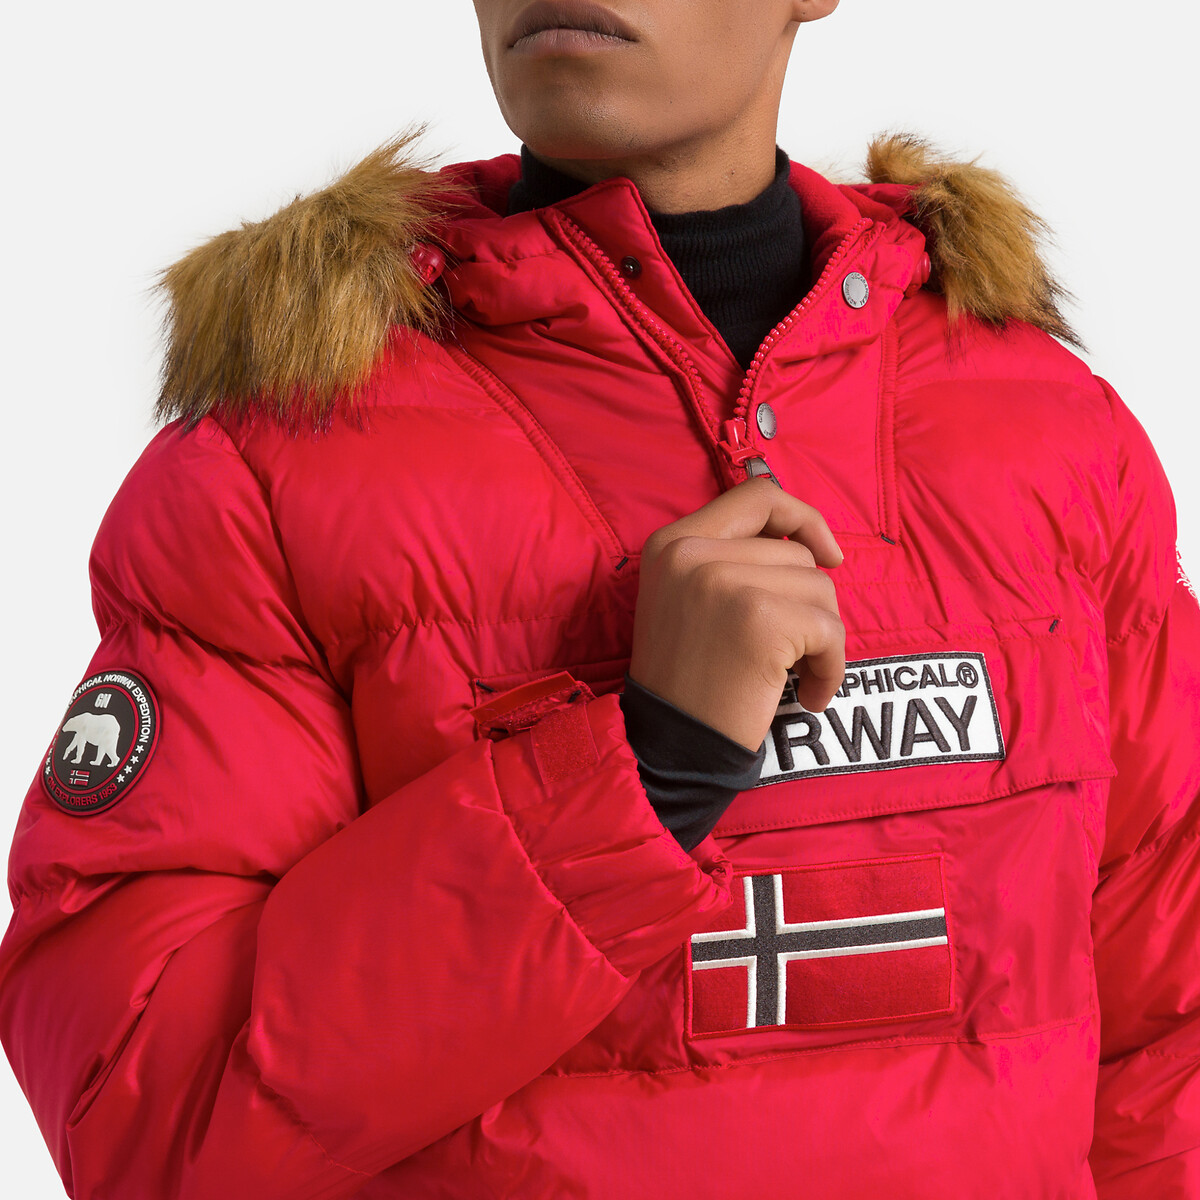 Men's jacket Geographical Norway Bilboquet